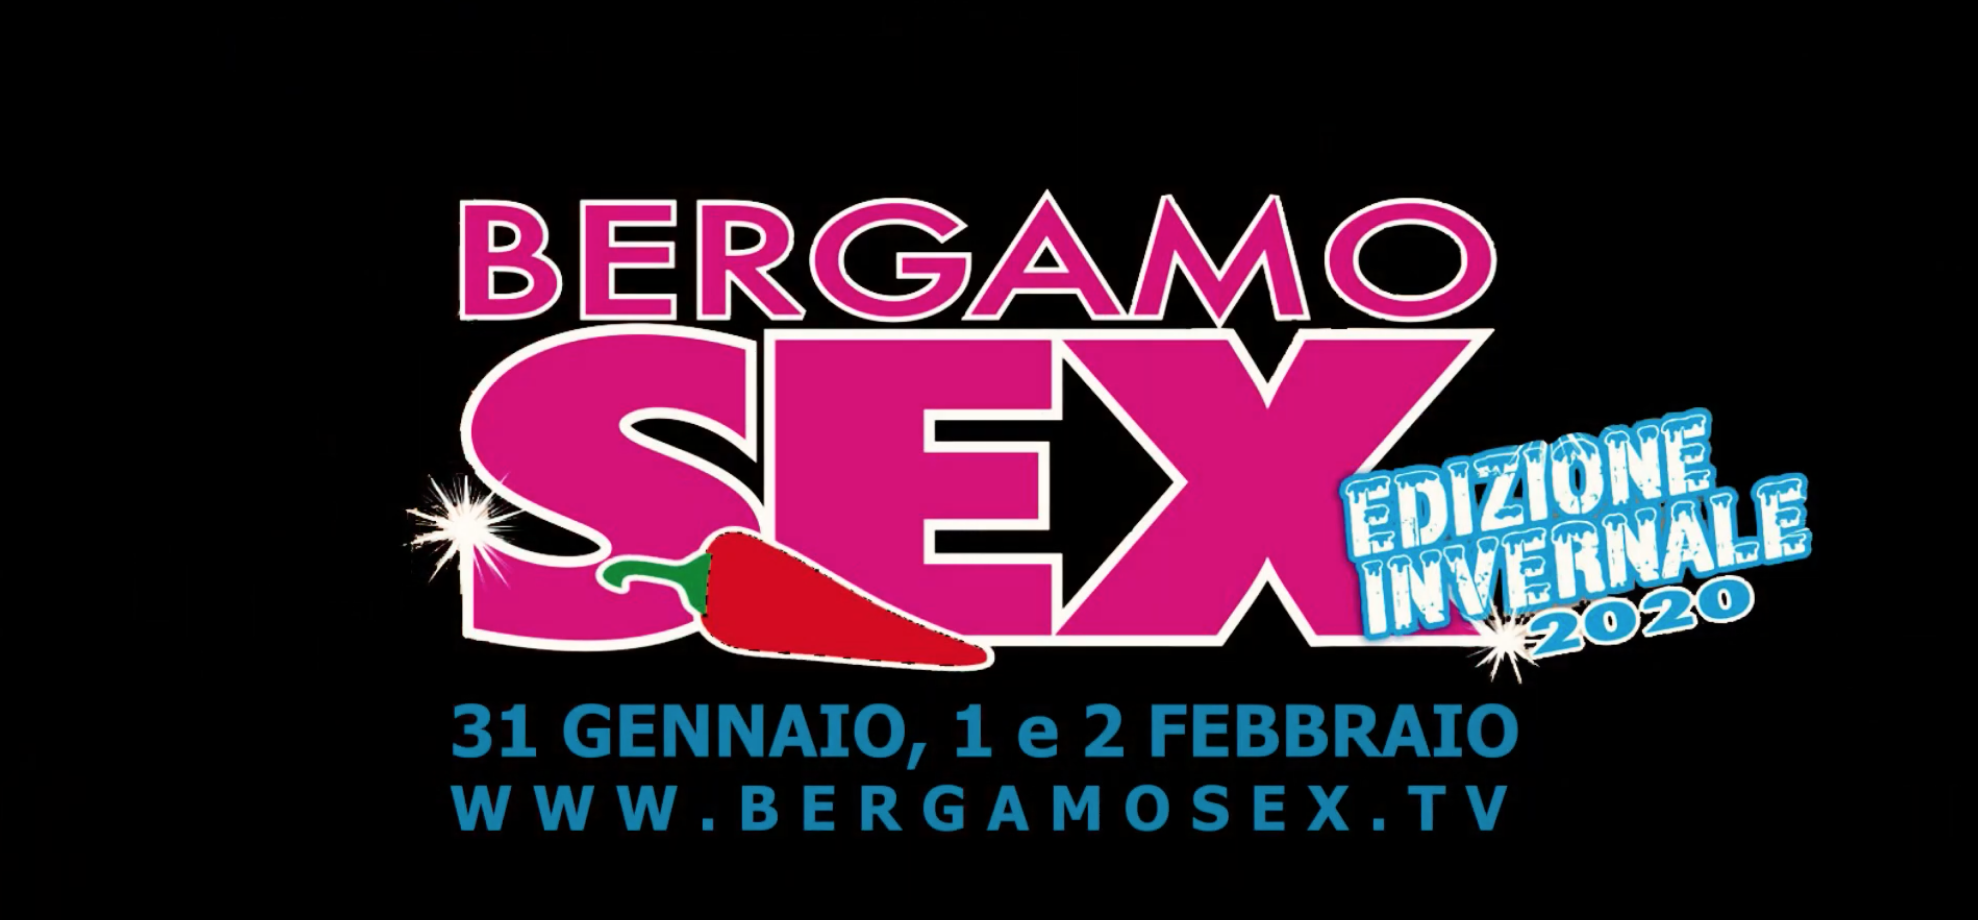 Bergamo, pubblicità lesive alla dignità femminile. Le contraddizioni del Comune 1